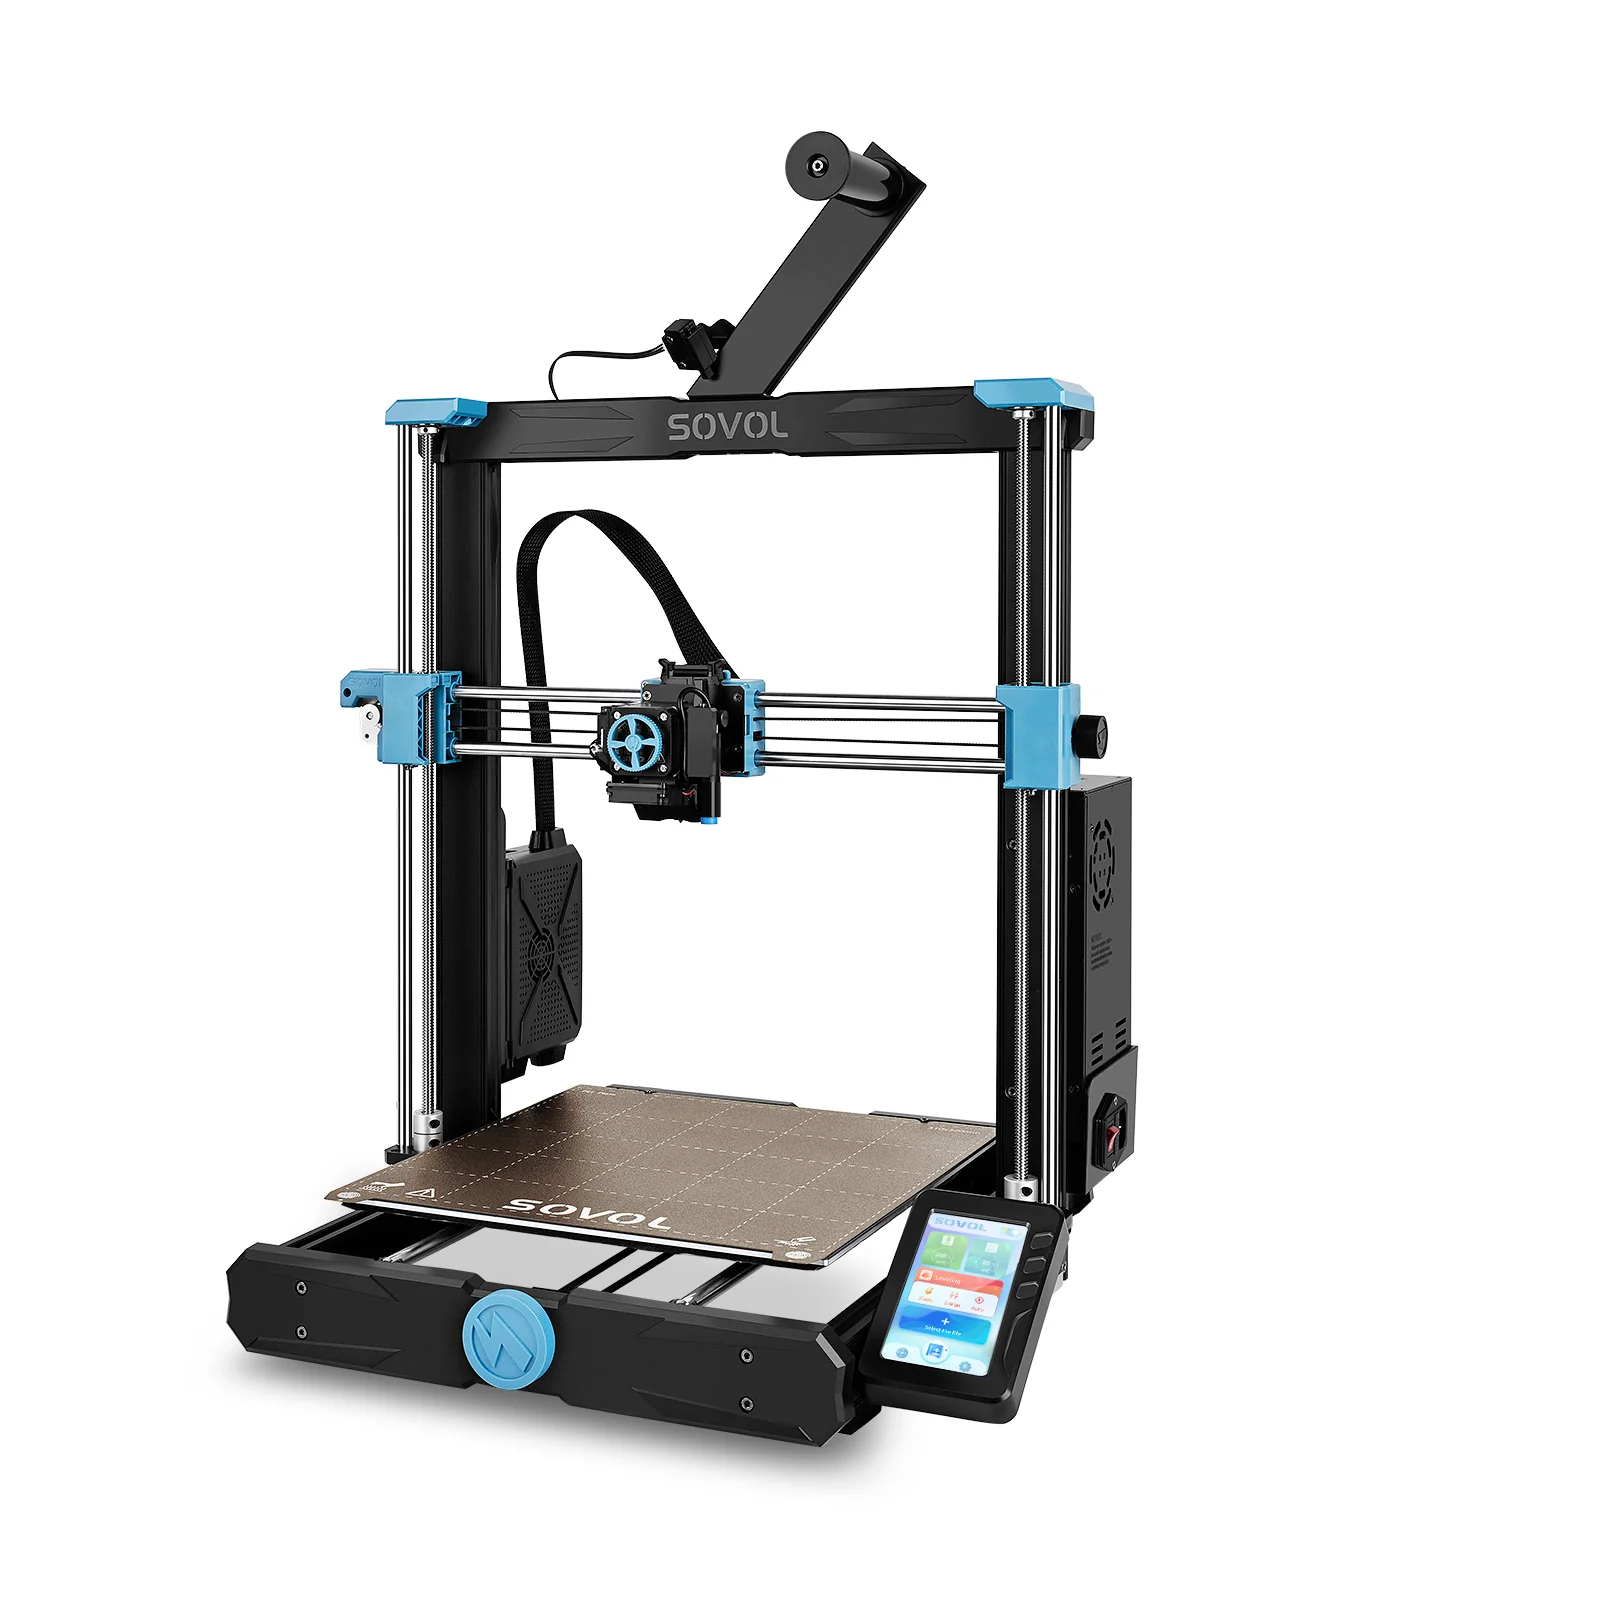 Creality Séchoir à filament pour imprimante 3D Ender 3 V2, CR10